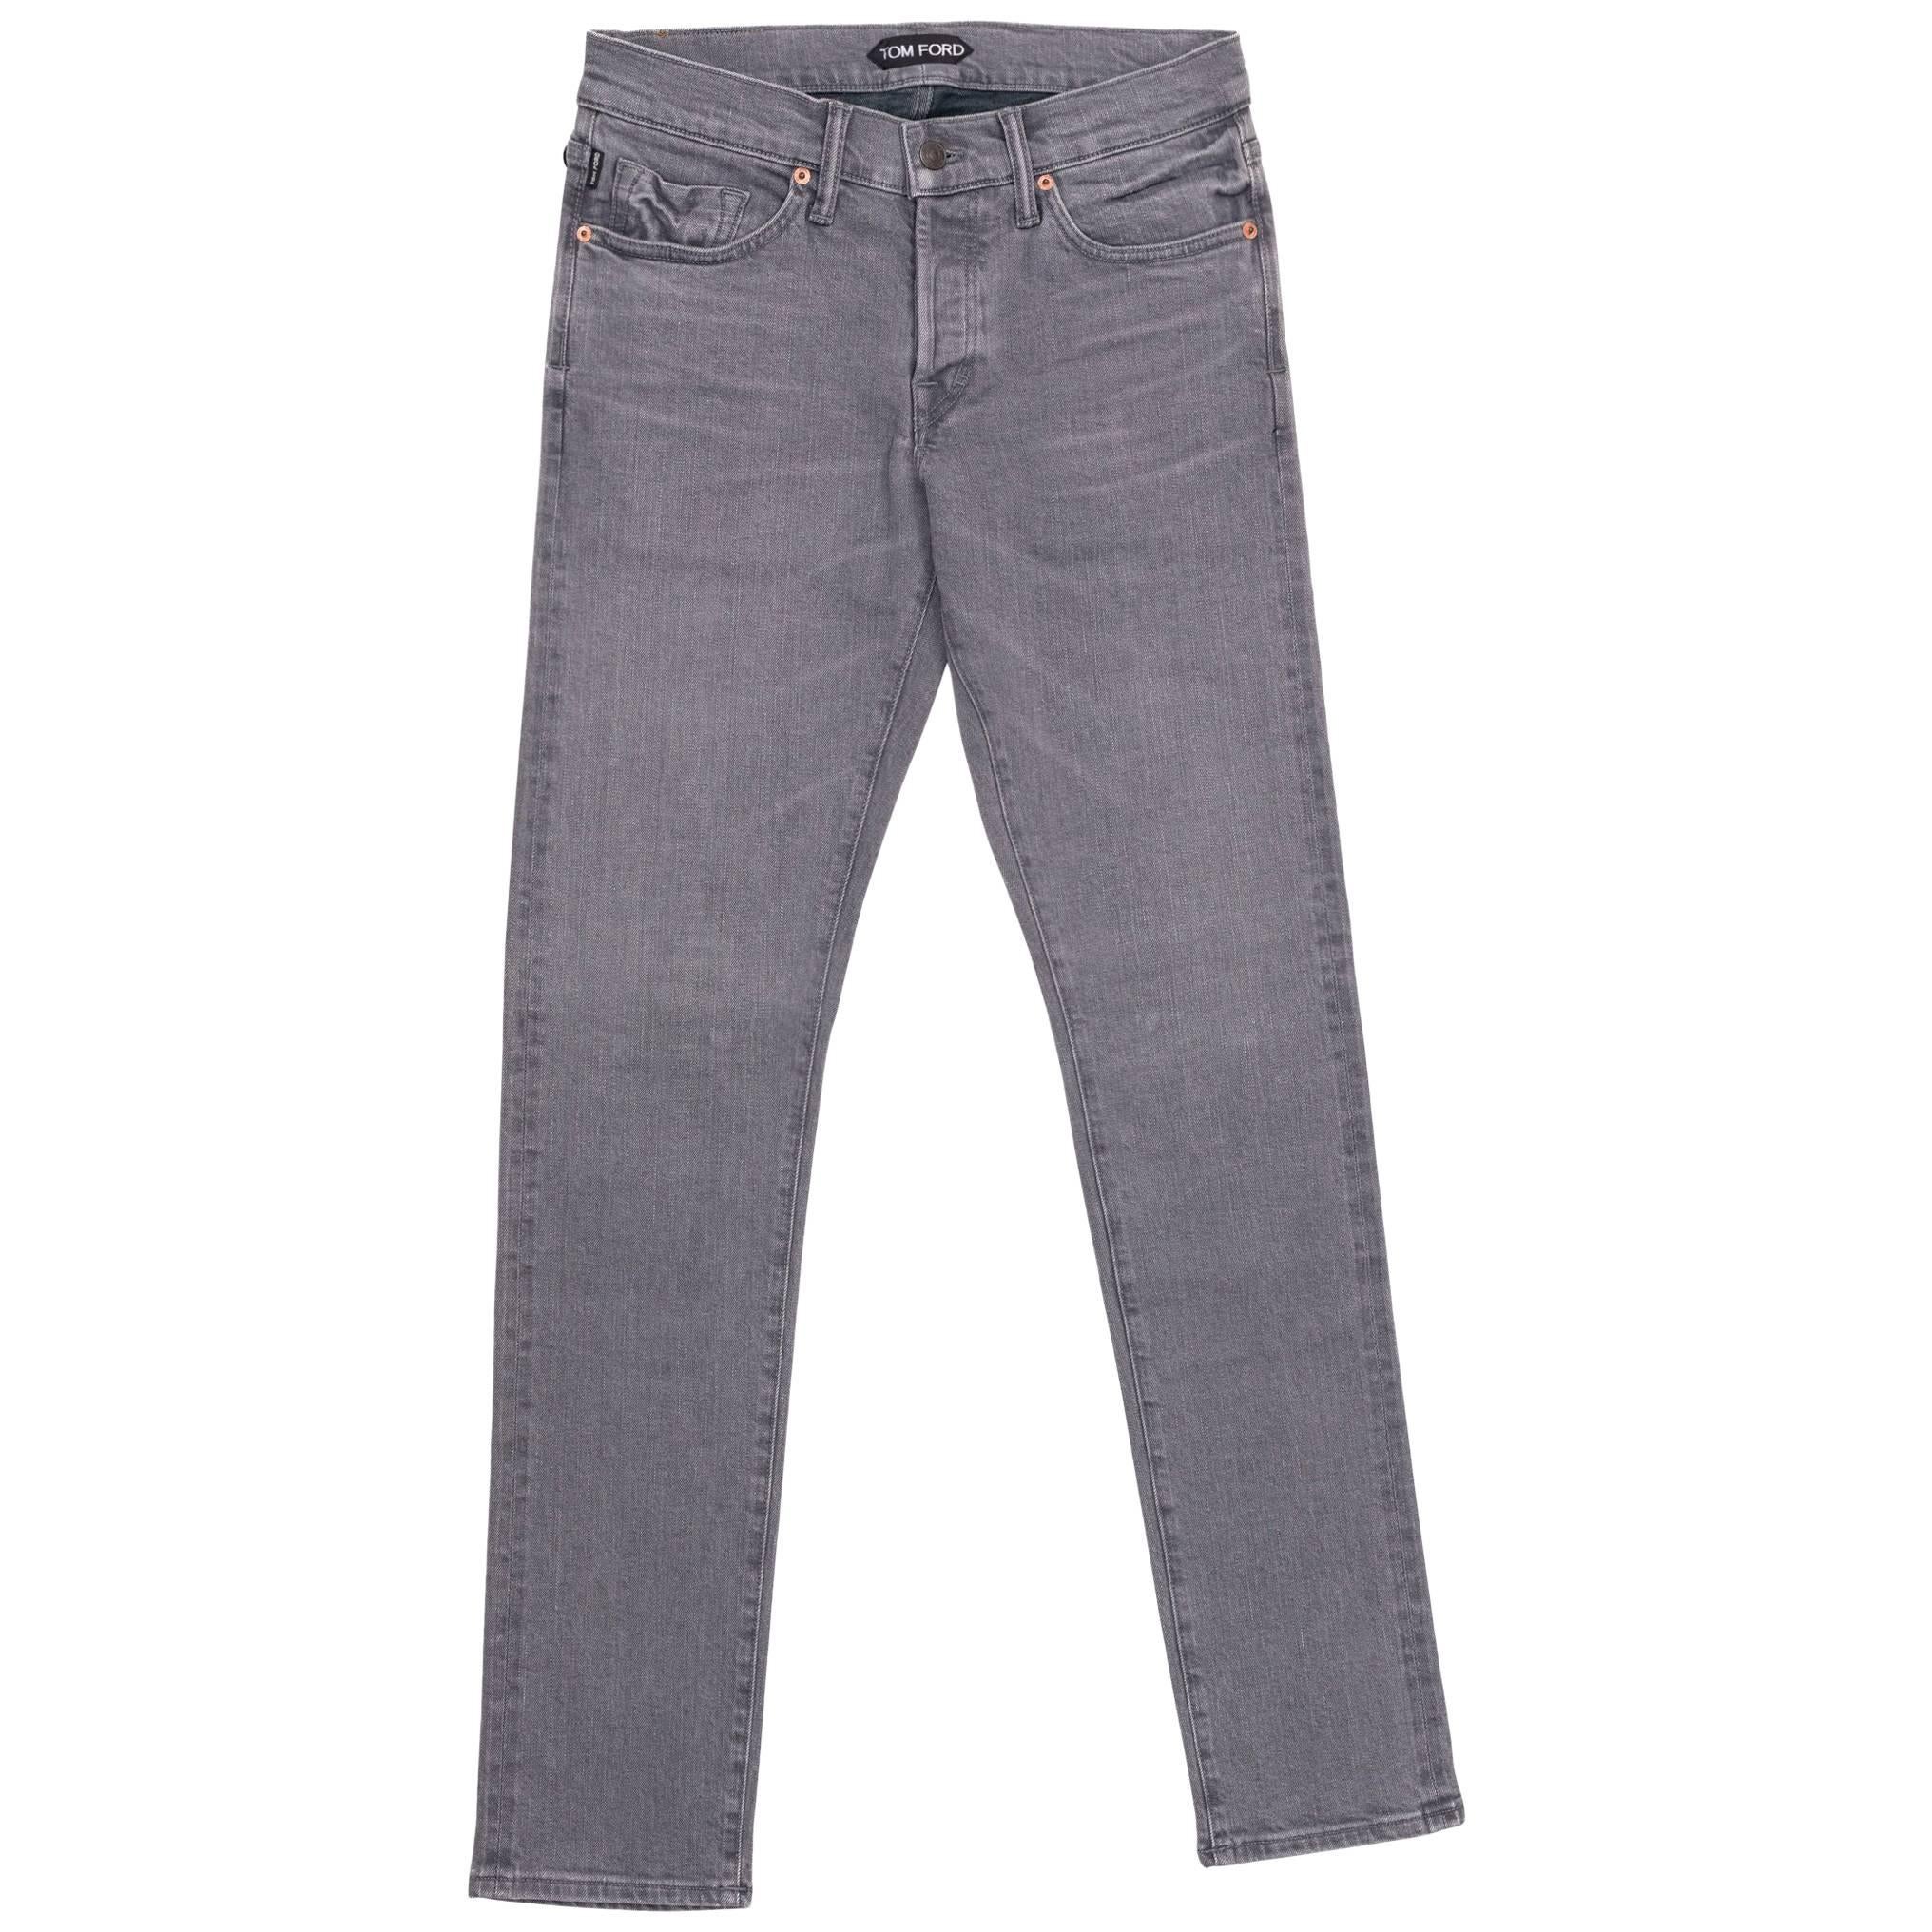 Tom Ford Selvedge Denim Jeans Medium Grey Wash Size 30 Slim Fit Model For Sale